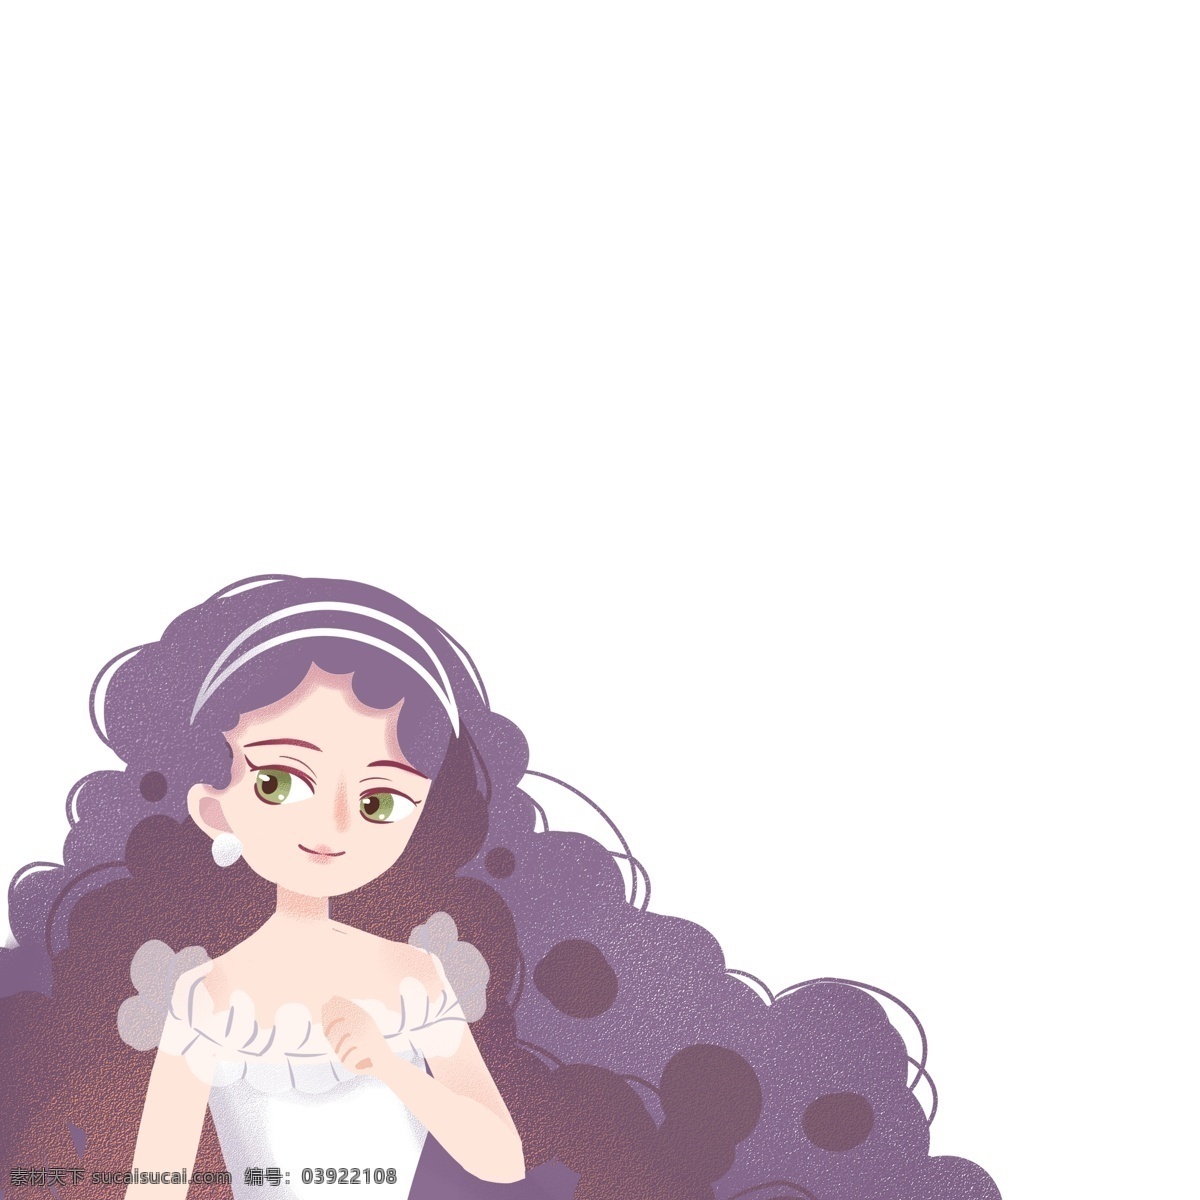 紫色 长头 发 卡通美女 免 抠 图 卡通女孩 卷头发的女孩 仙女 花仙子 女孩子 紫色长头发 免抠图